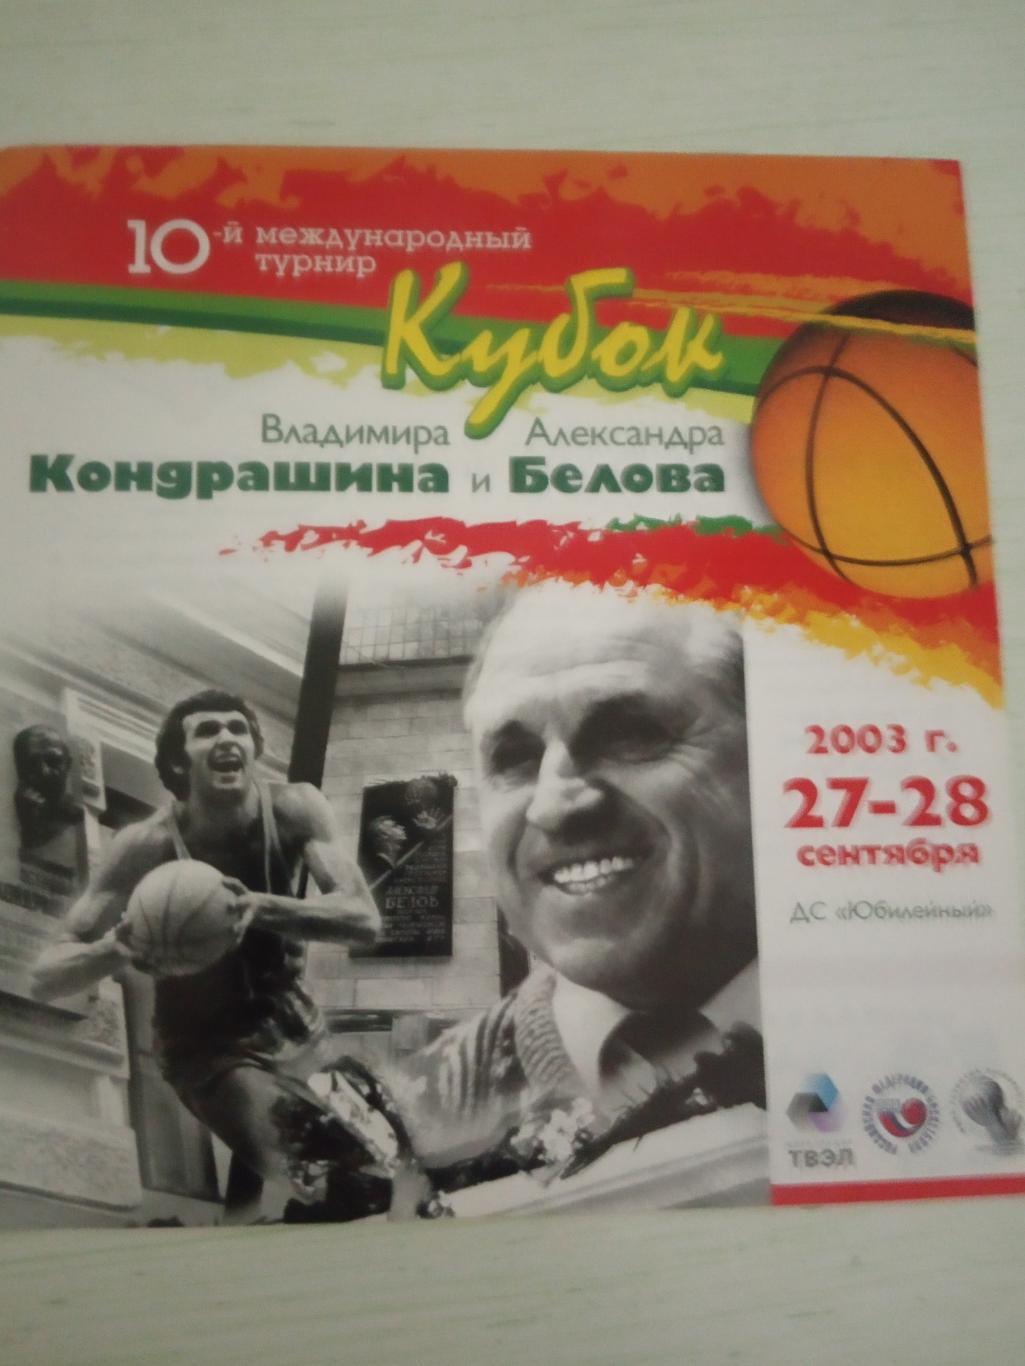 Кубок Кондрашина и Белова 27-28 сентября 2003 ЦСКА